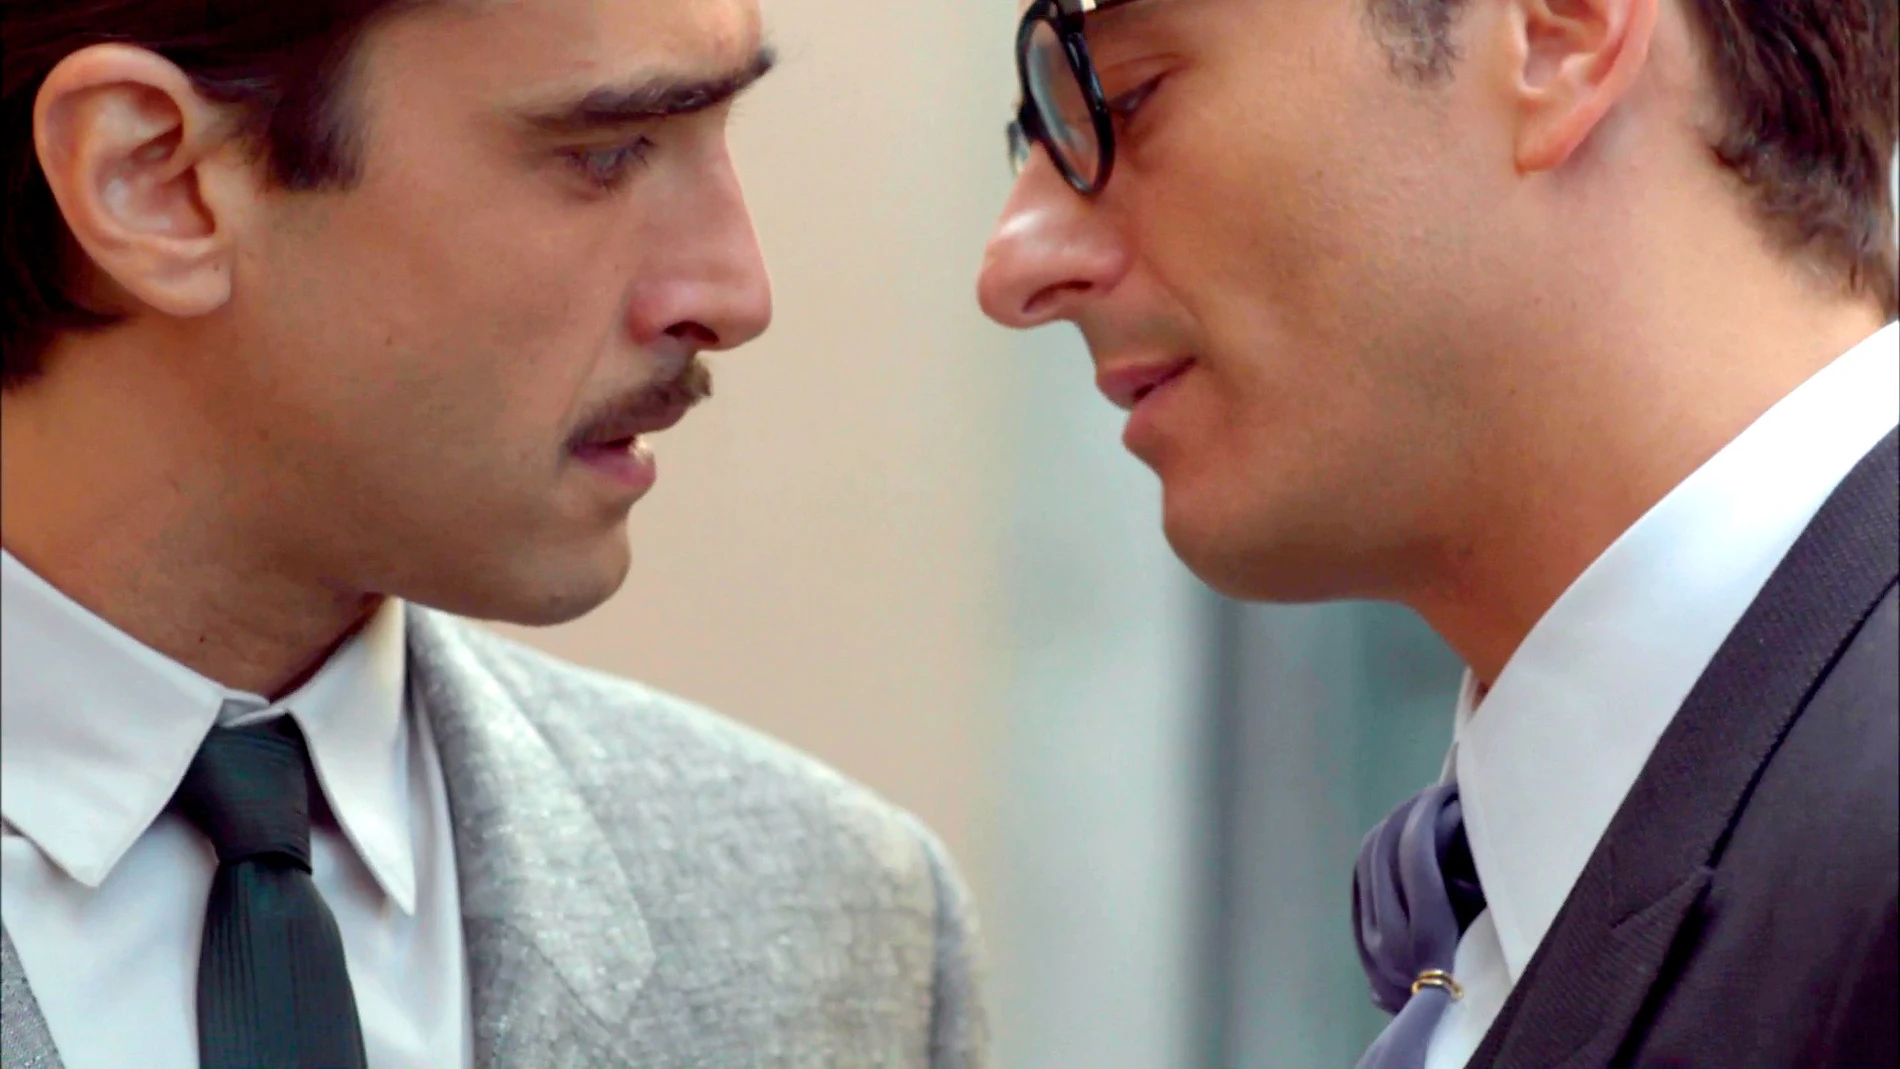 Raúl y Humberto se desean: "Todos tenemos derecho a amar"